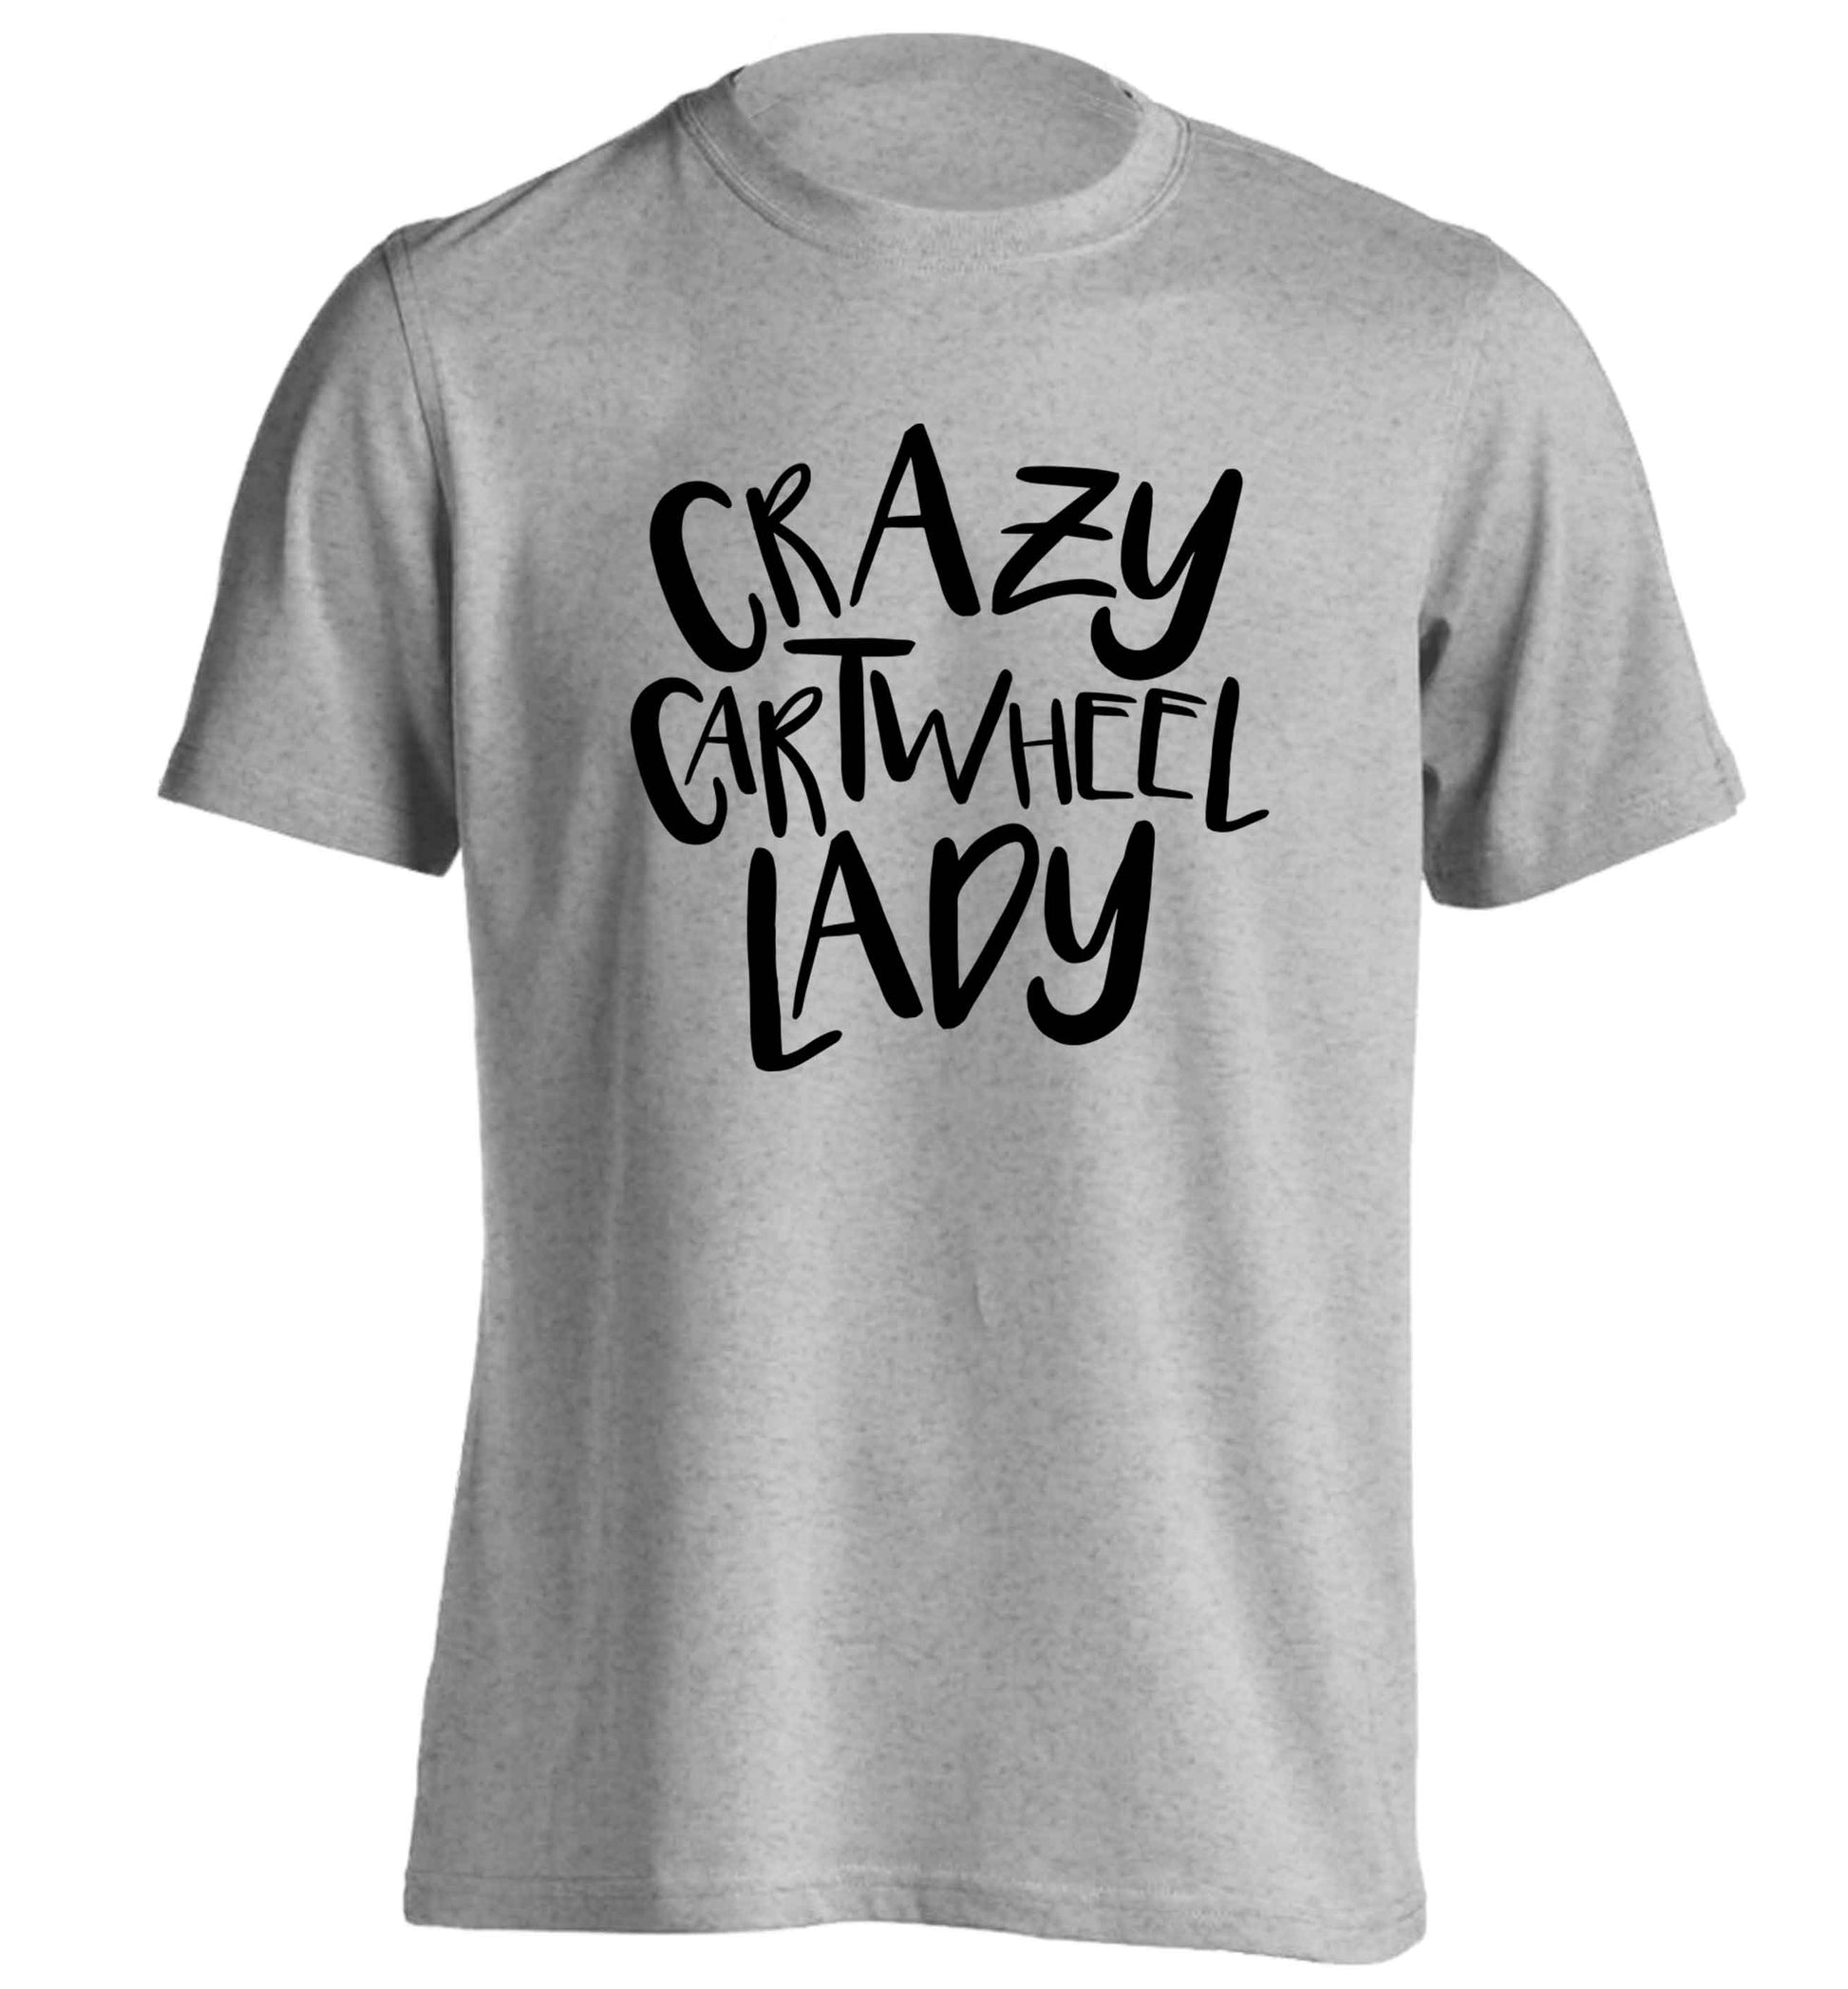 Crazy cartwheel lady adults unisex grey Tshirt 2XL